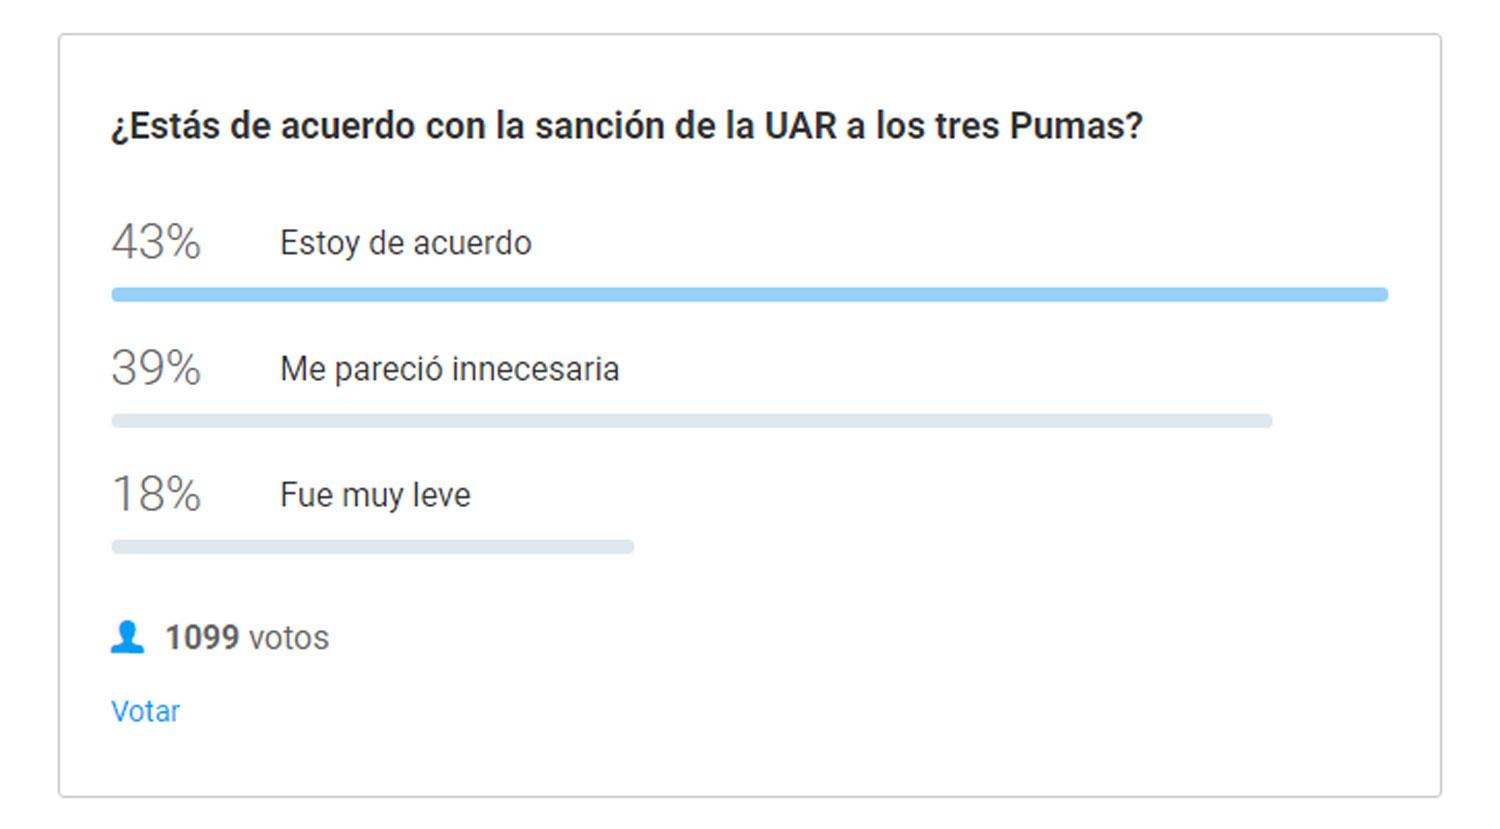 Cómo votaron los lectores de LA GACETA sobre la sanción de la UAR a Los Pumas